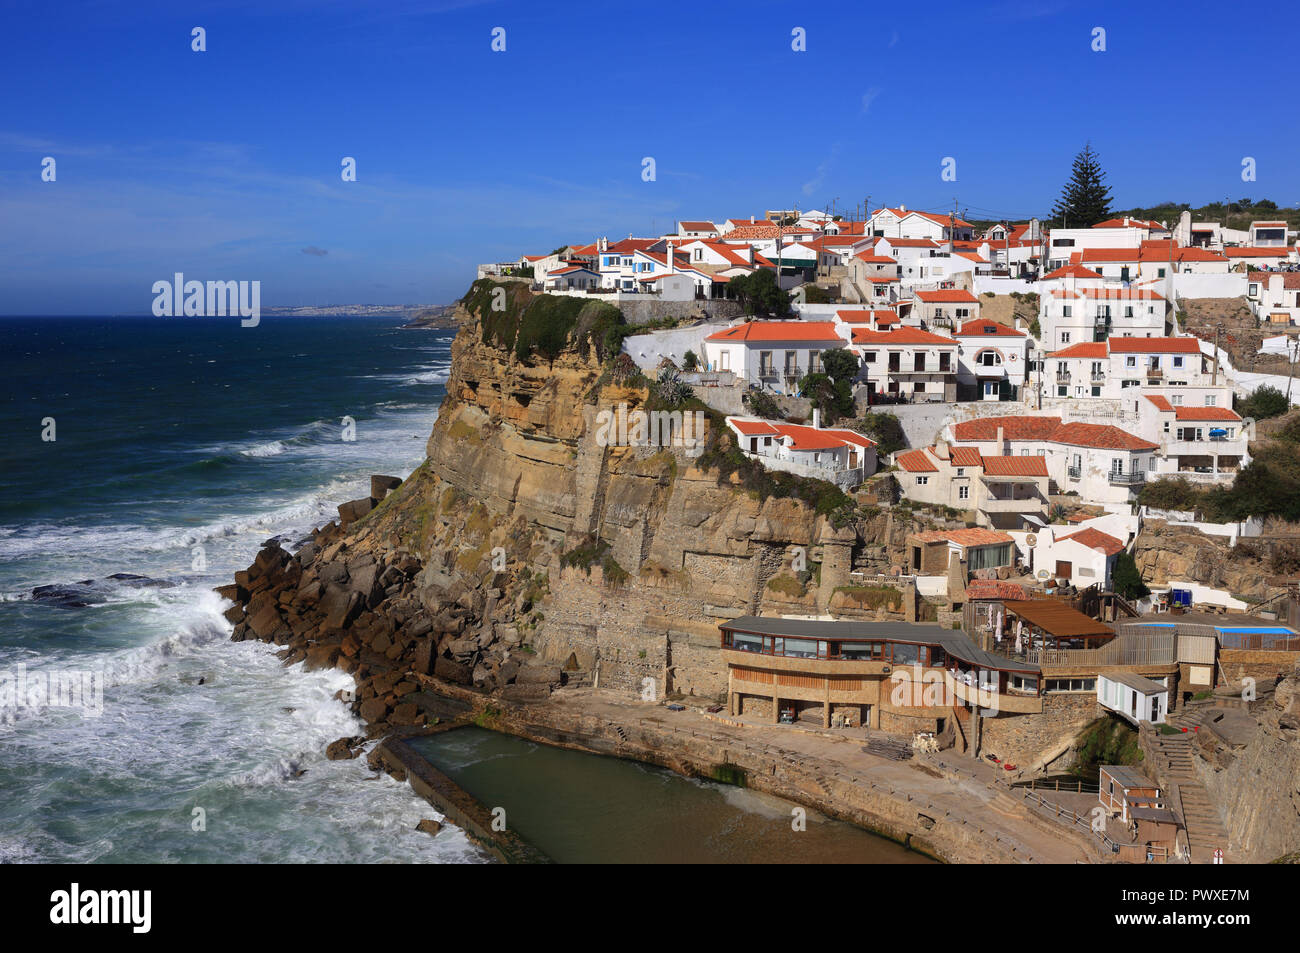 Portugal Azenhas do Mar, Colares, Sintra, nahe bei Lissabon. Dorf, gebaut auf einer Klippe mit Blick auf den Atlantik und den Strand. Stockfoto